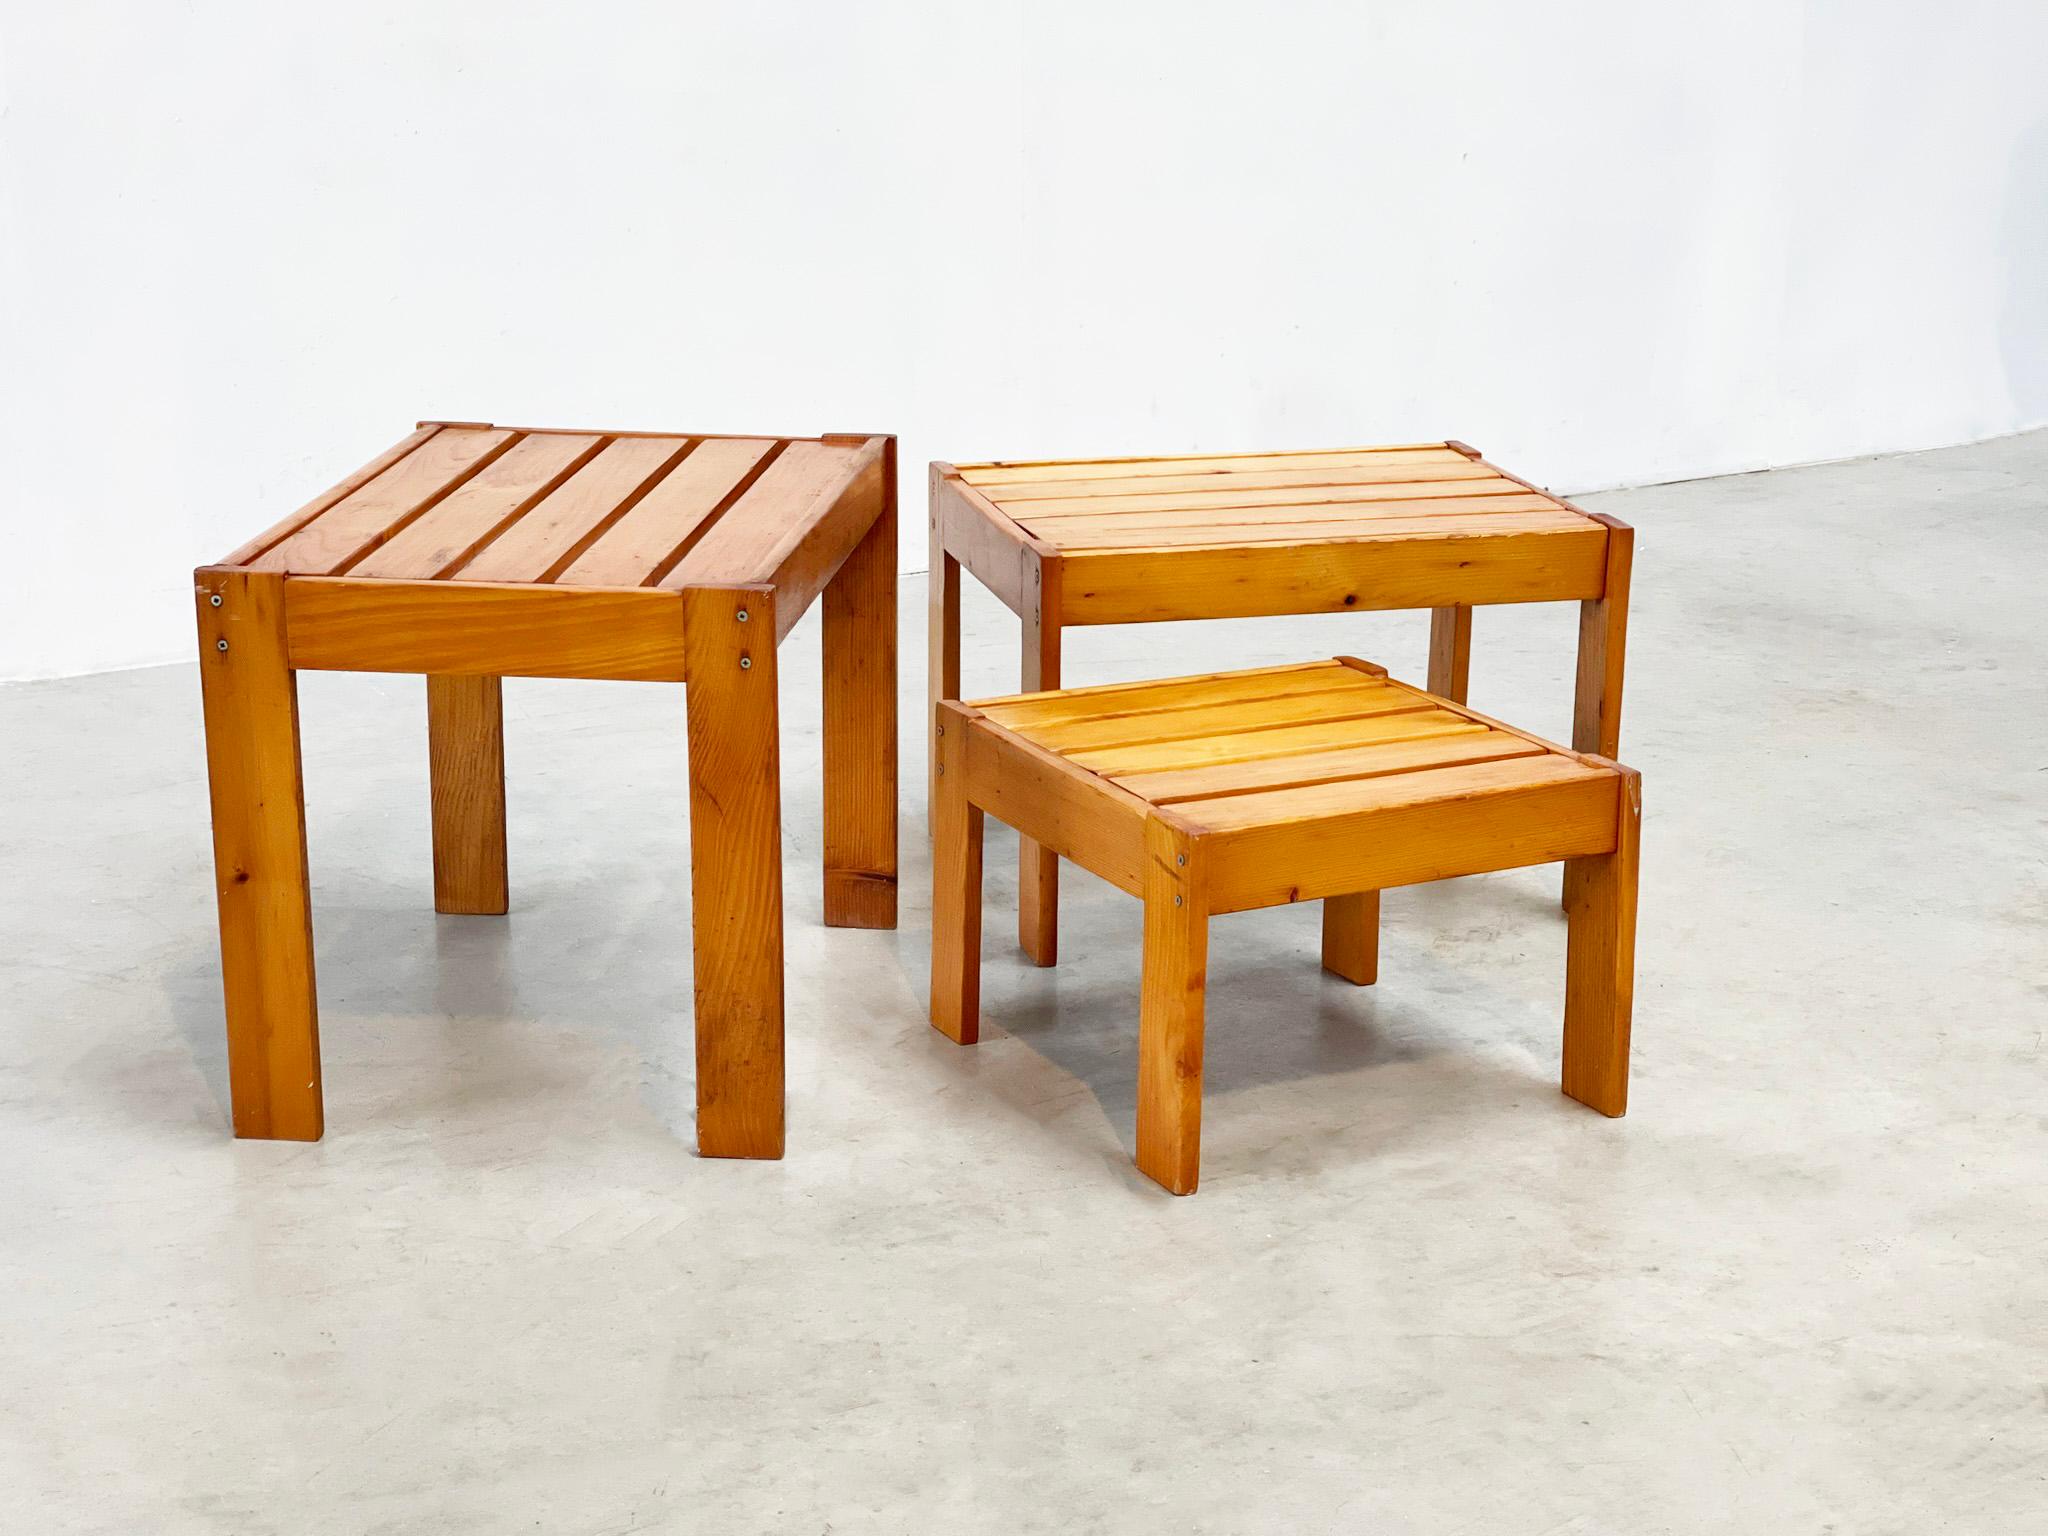 Tables gigognes bois
Ce type de mobilier est de plus en plus populaire.  Il s'agit d'un ensemble de tables provenant de France. Il s'est probablement inspiré de plusieurs designers français comme Pierre Chapo Le décor a probablement été fabriqué à